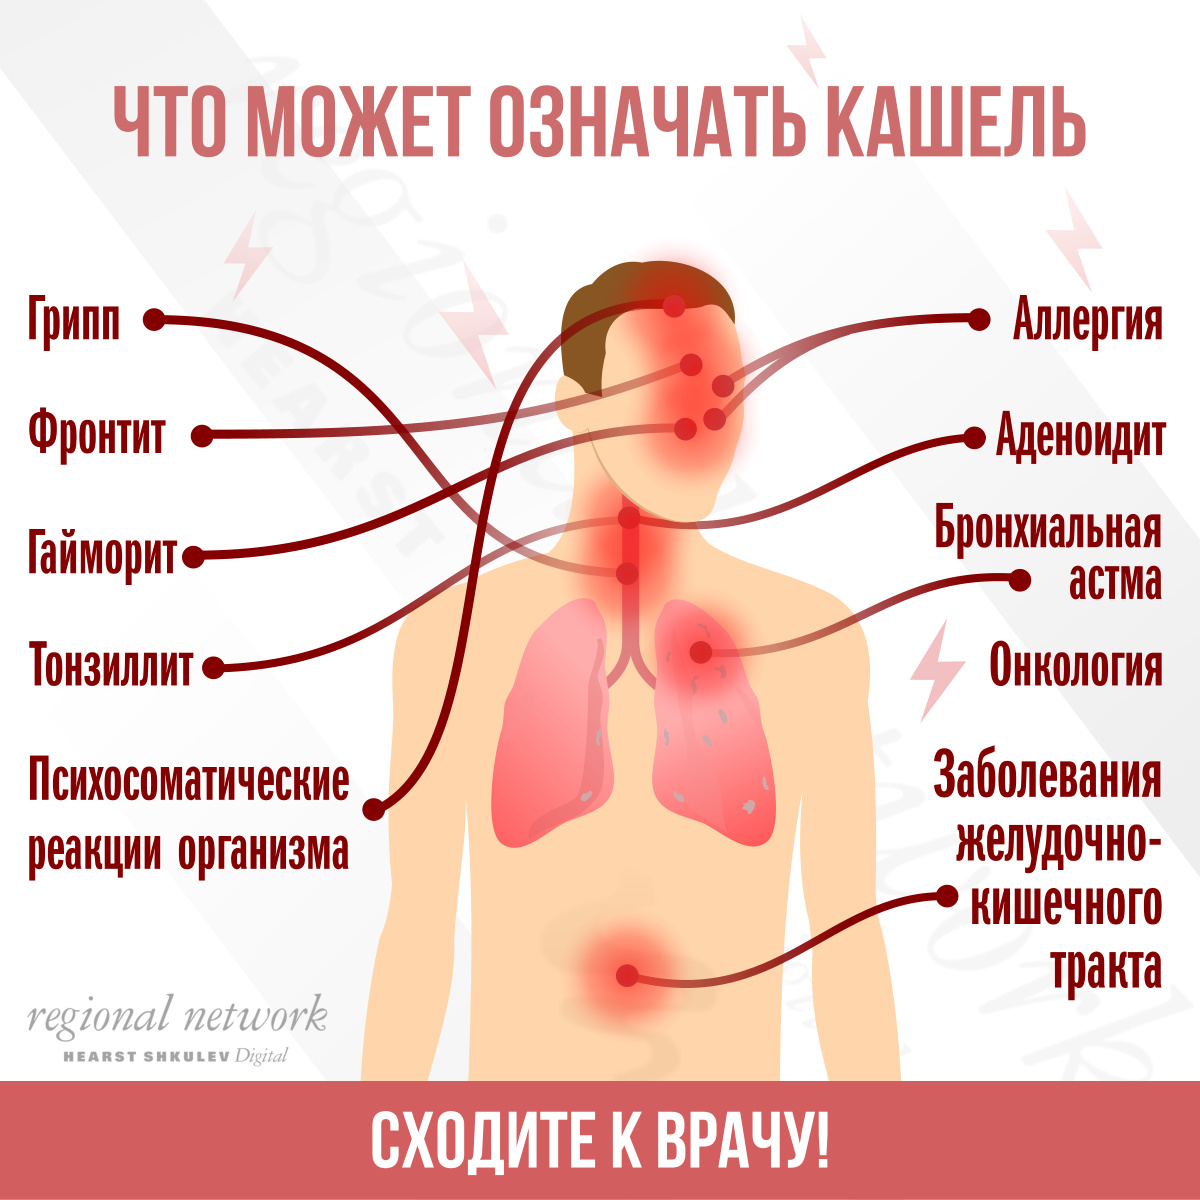 Чем опасен кашель?